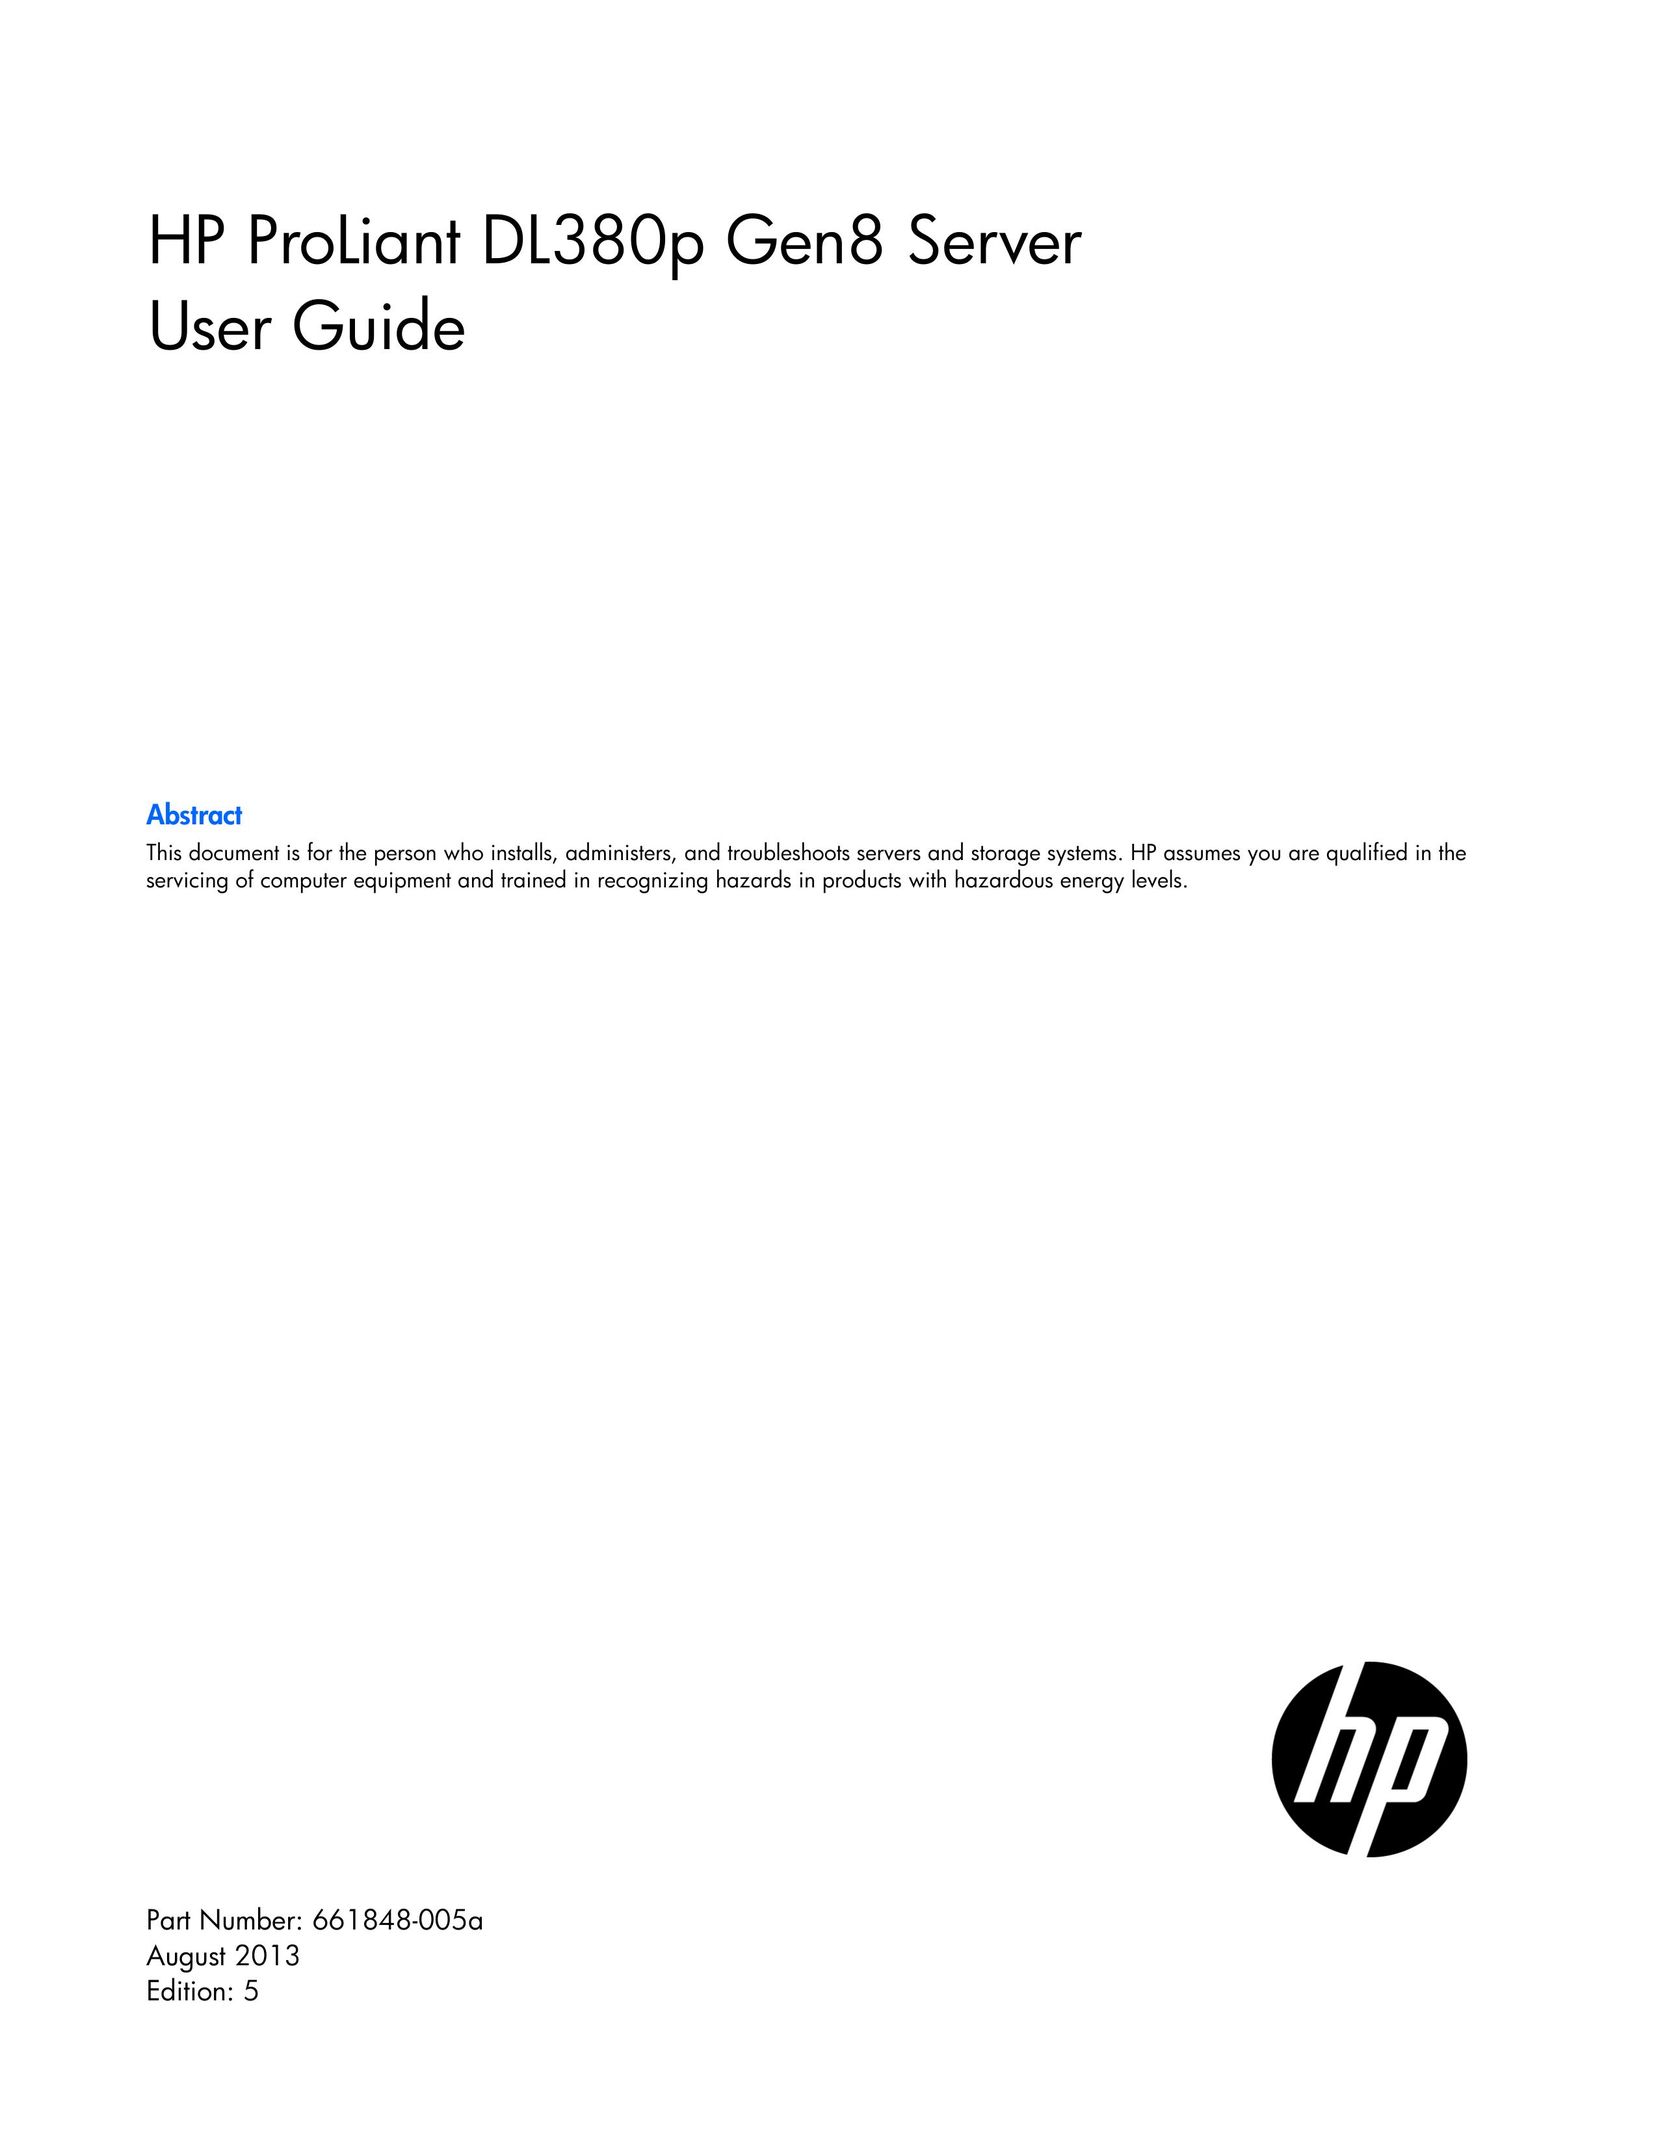 HP (Hewlett-Packard) 670857-S01 Server User Manual